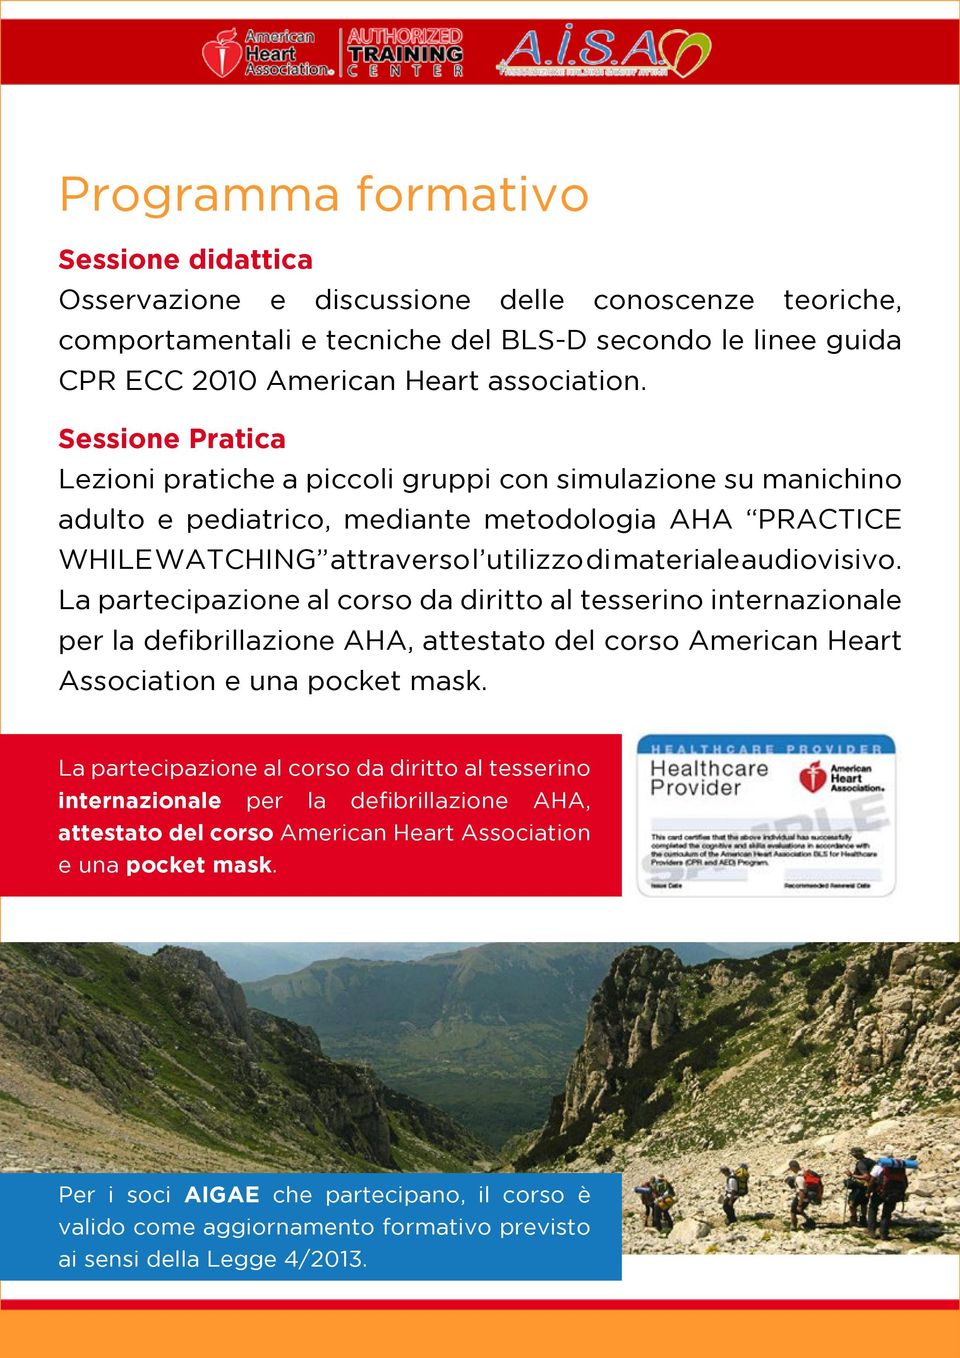 La partecipazione al corso da diritto al tesserino internazionale per la defibrillazione AHA, attestato del corso American Heart Association e una pocket mask.